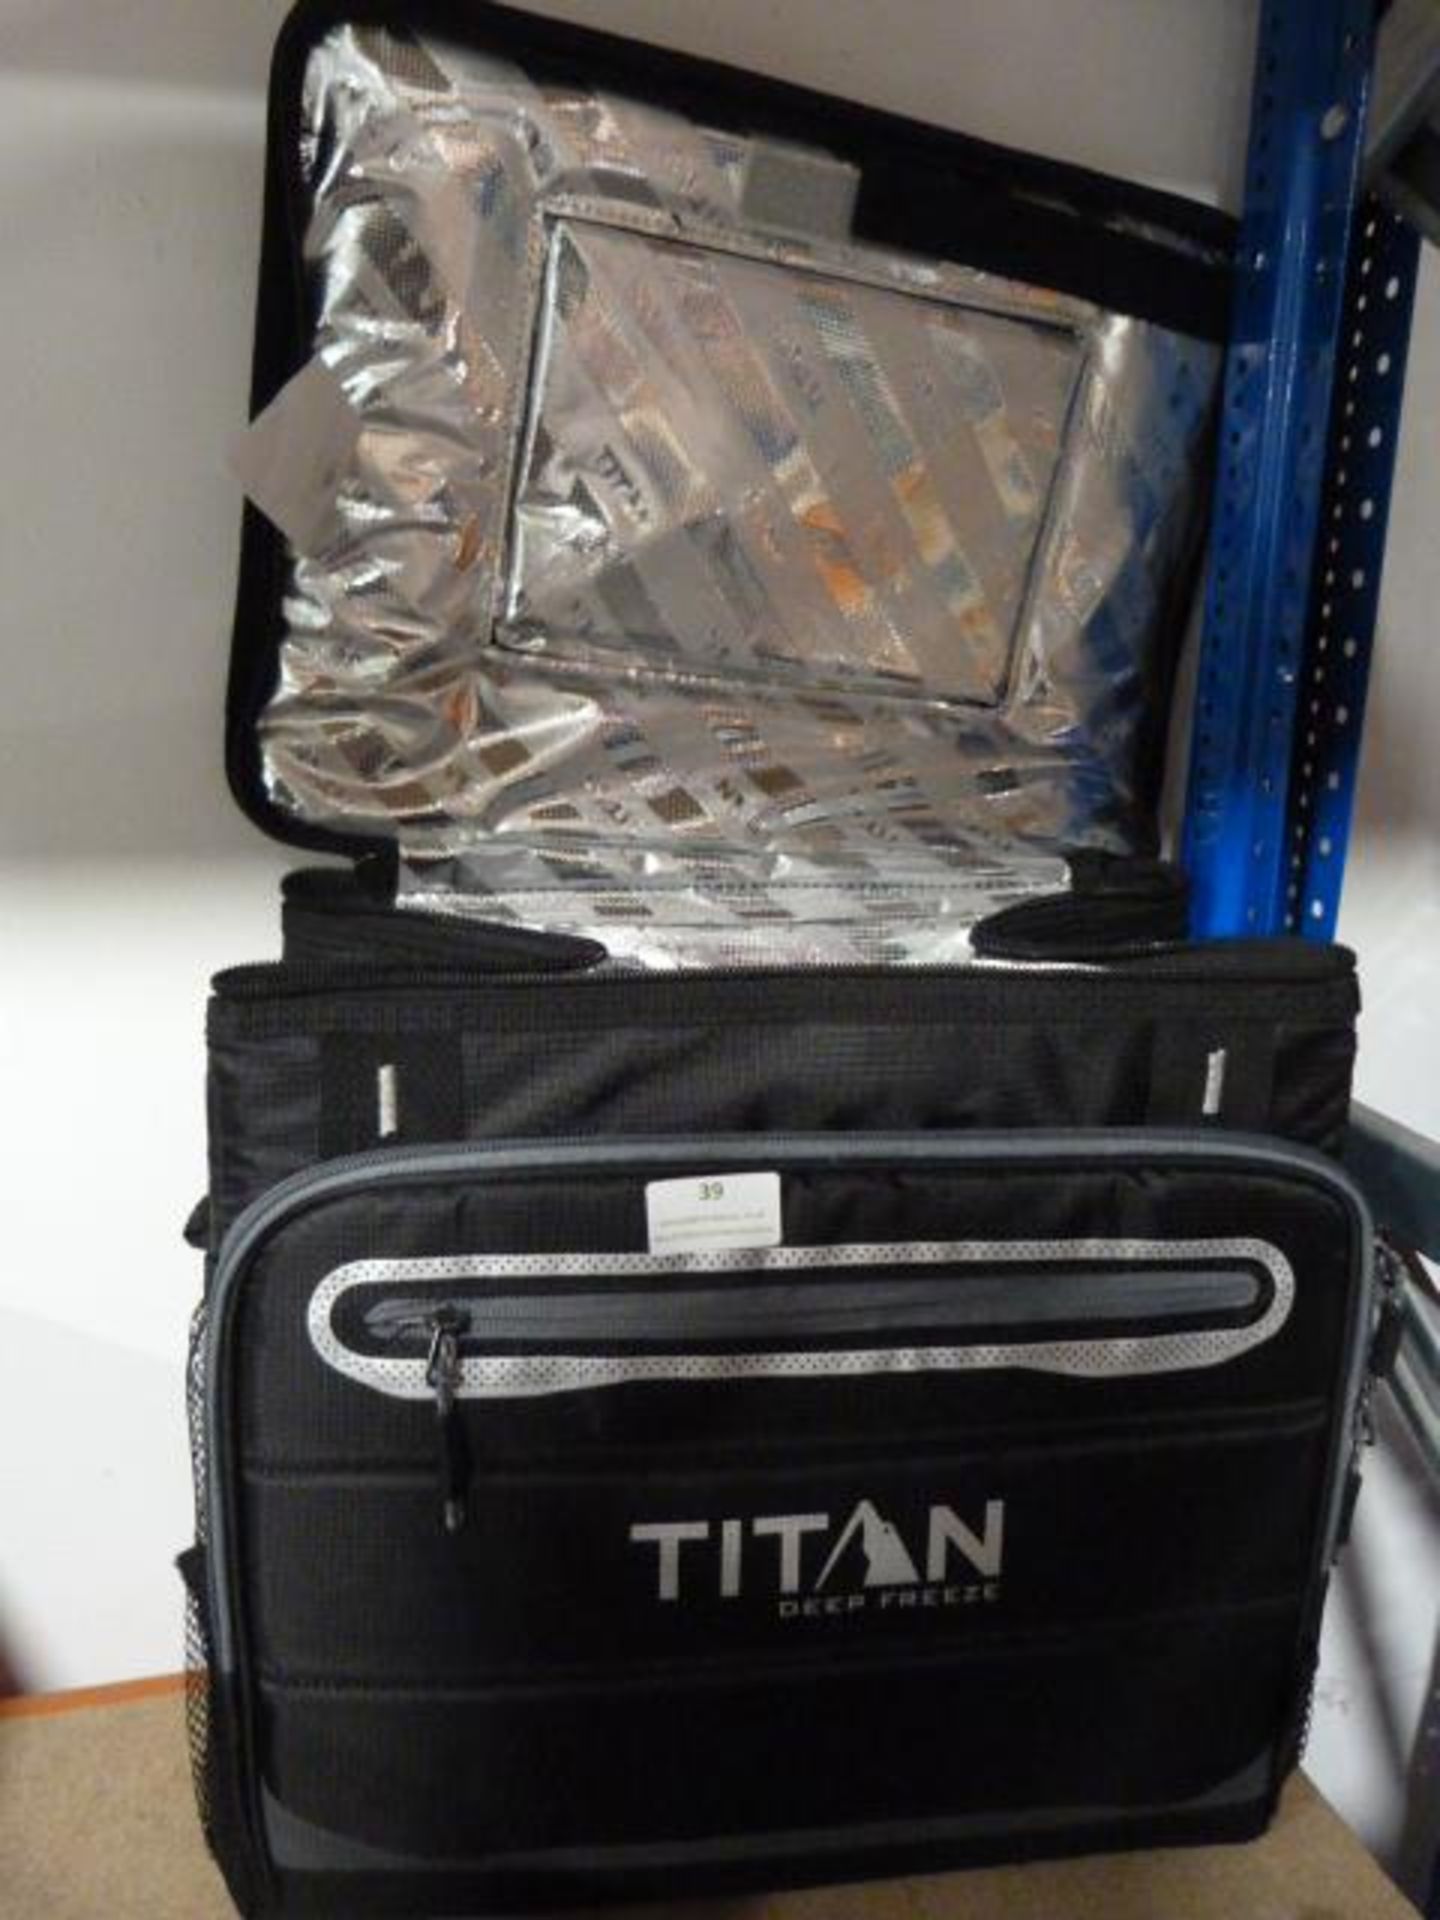 *Titan Deep Freeze Cool Bag